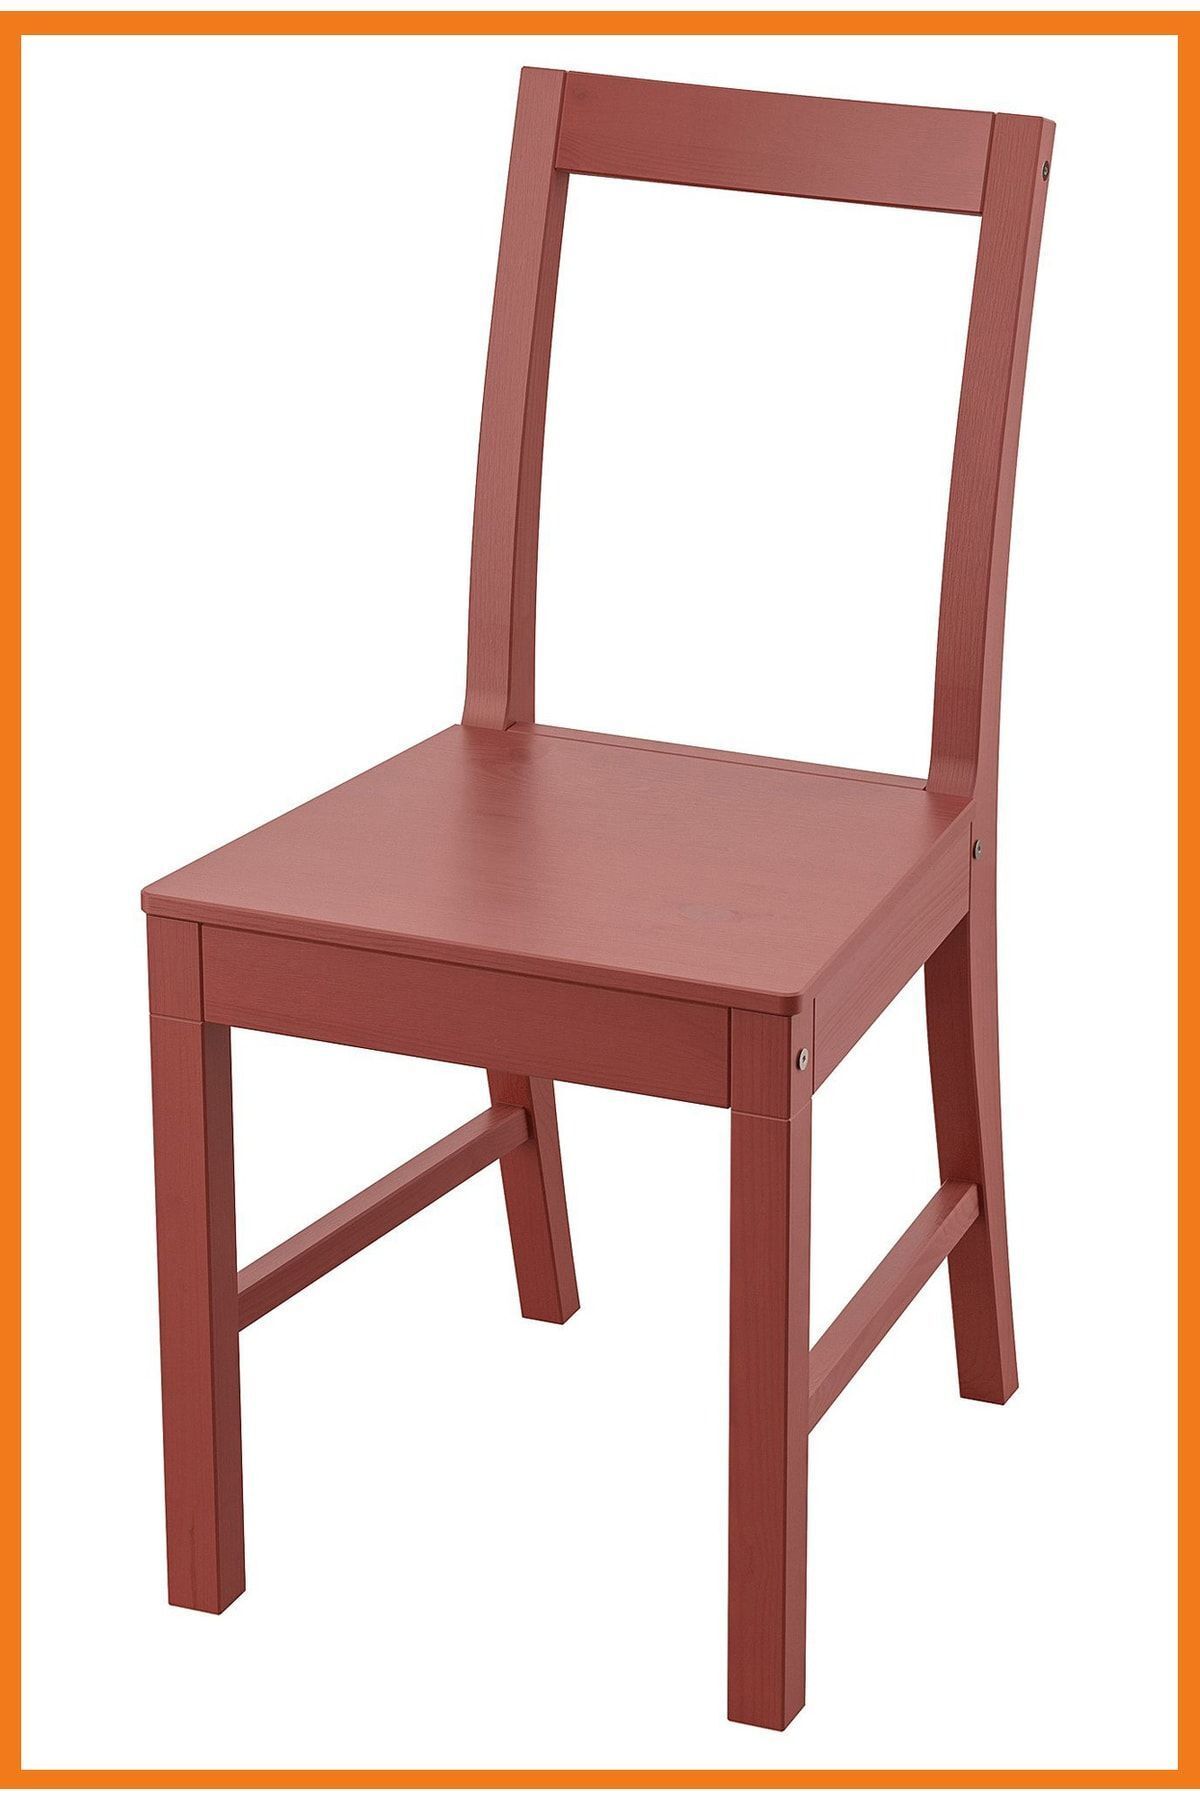 Alony Home Pinntorp Ahşap Sandalye 49 X 83 X 40 Cm Kırmızı